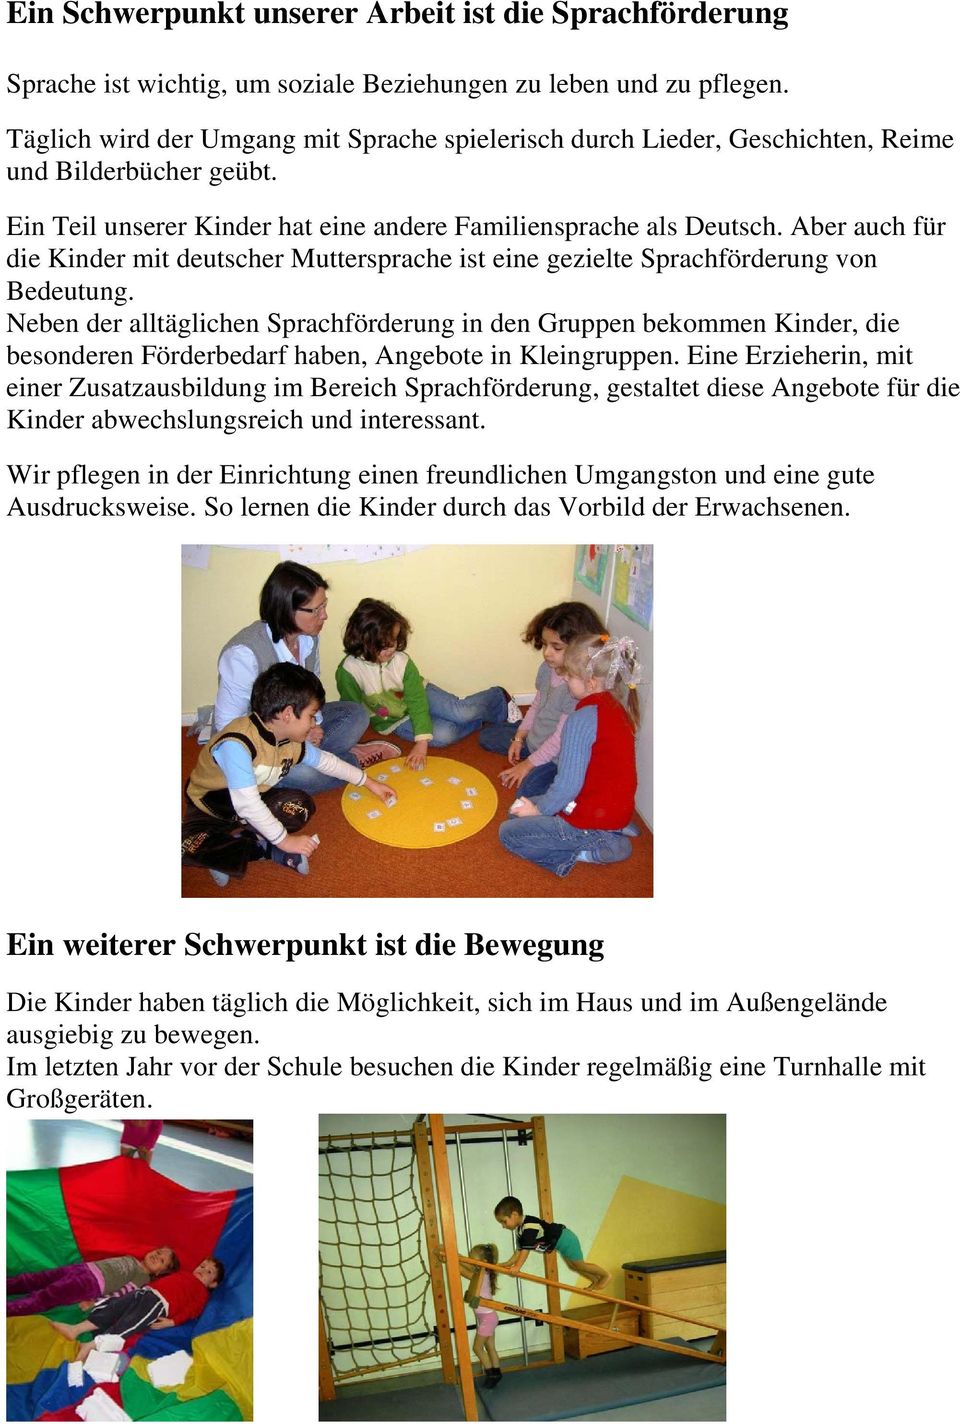 Aber auch für die Kinder mit deutscher Muttersprache ist eine gezielte Sprachförderung von Bedeutung.